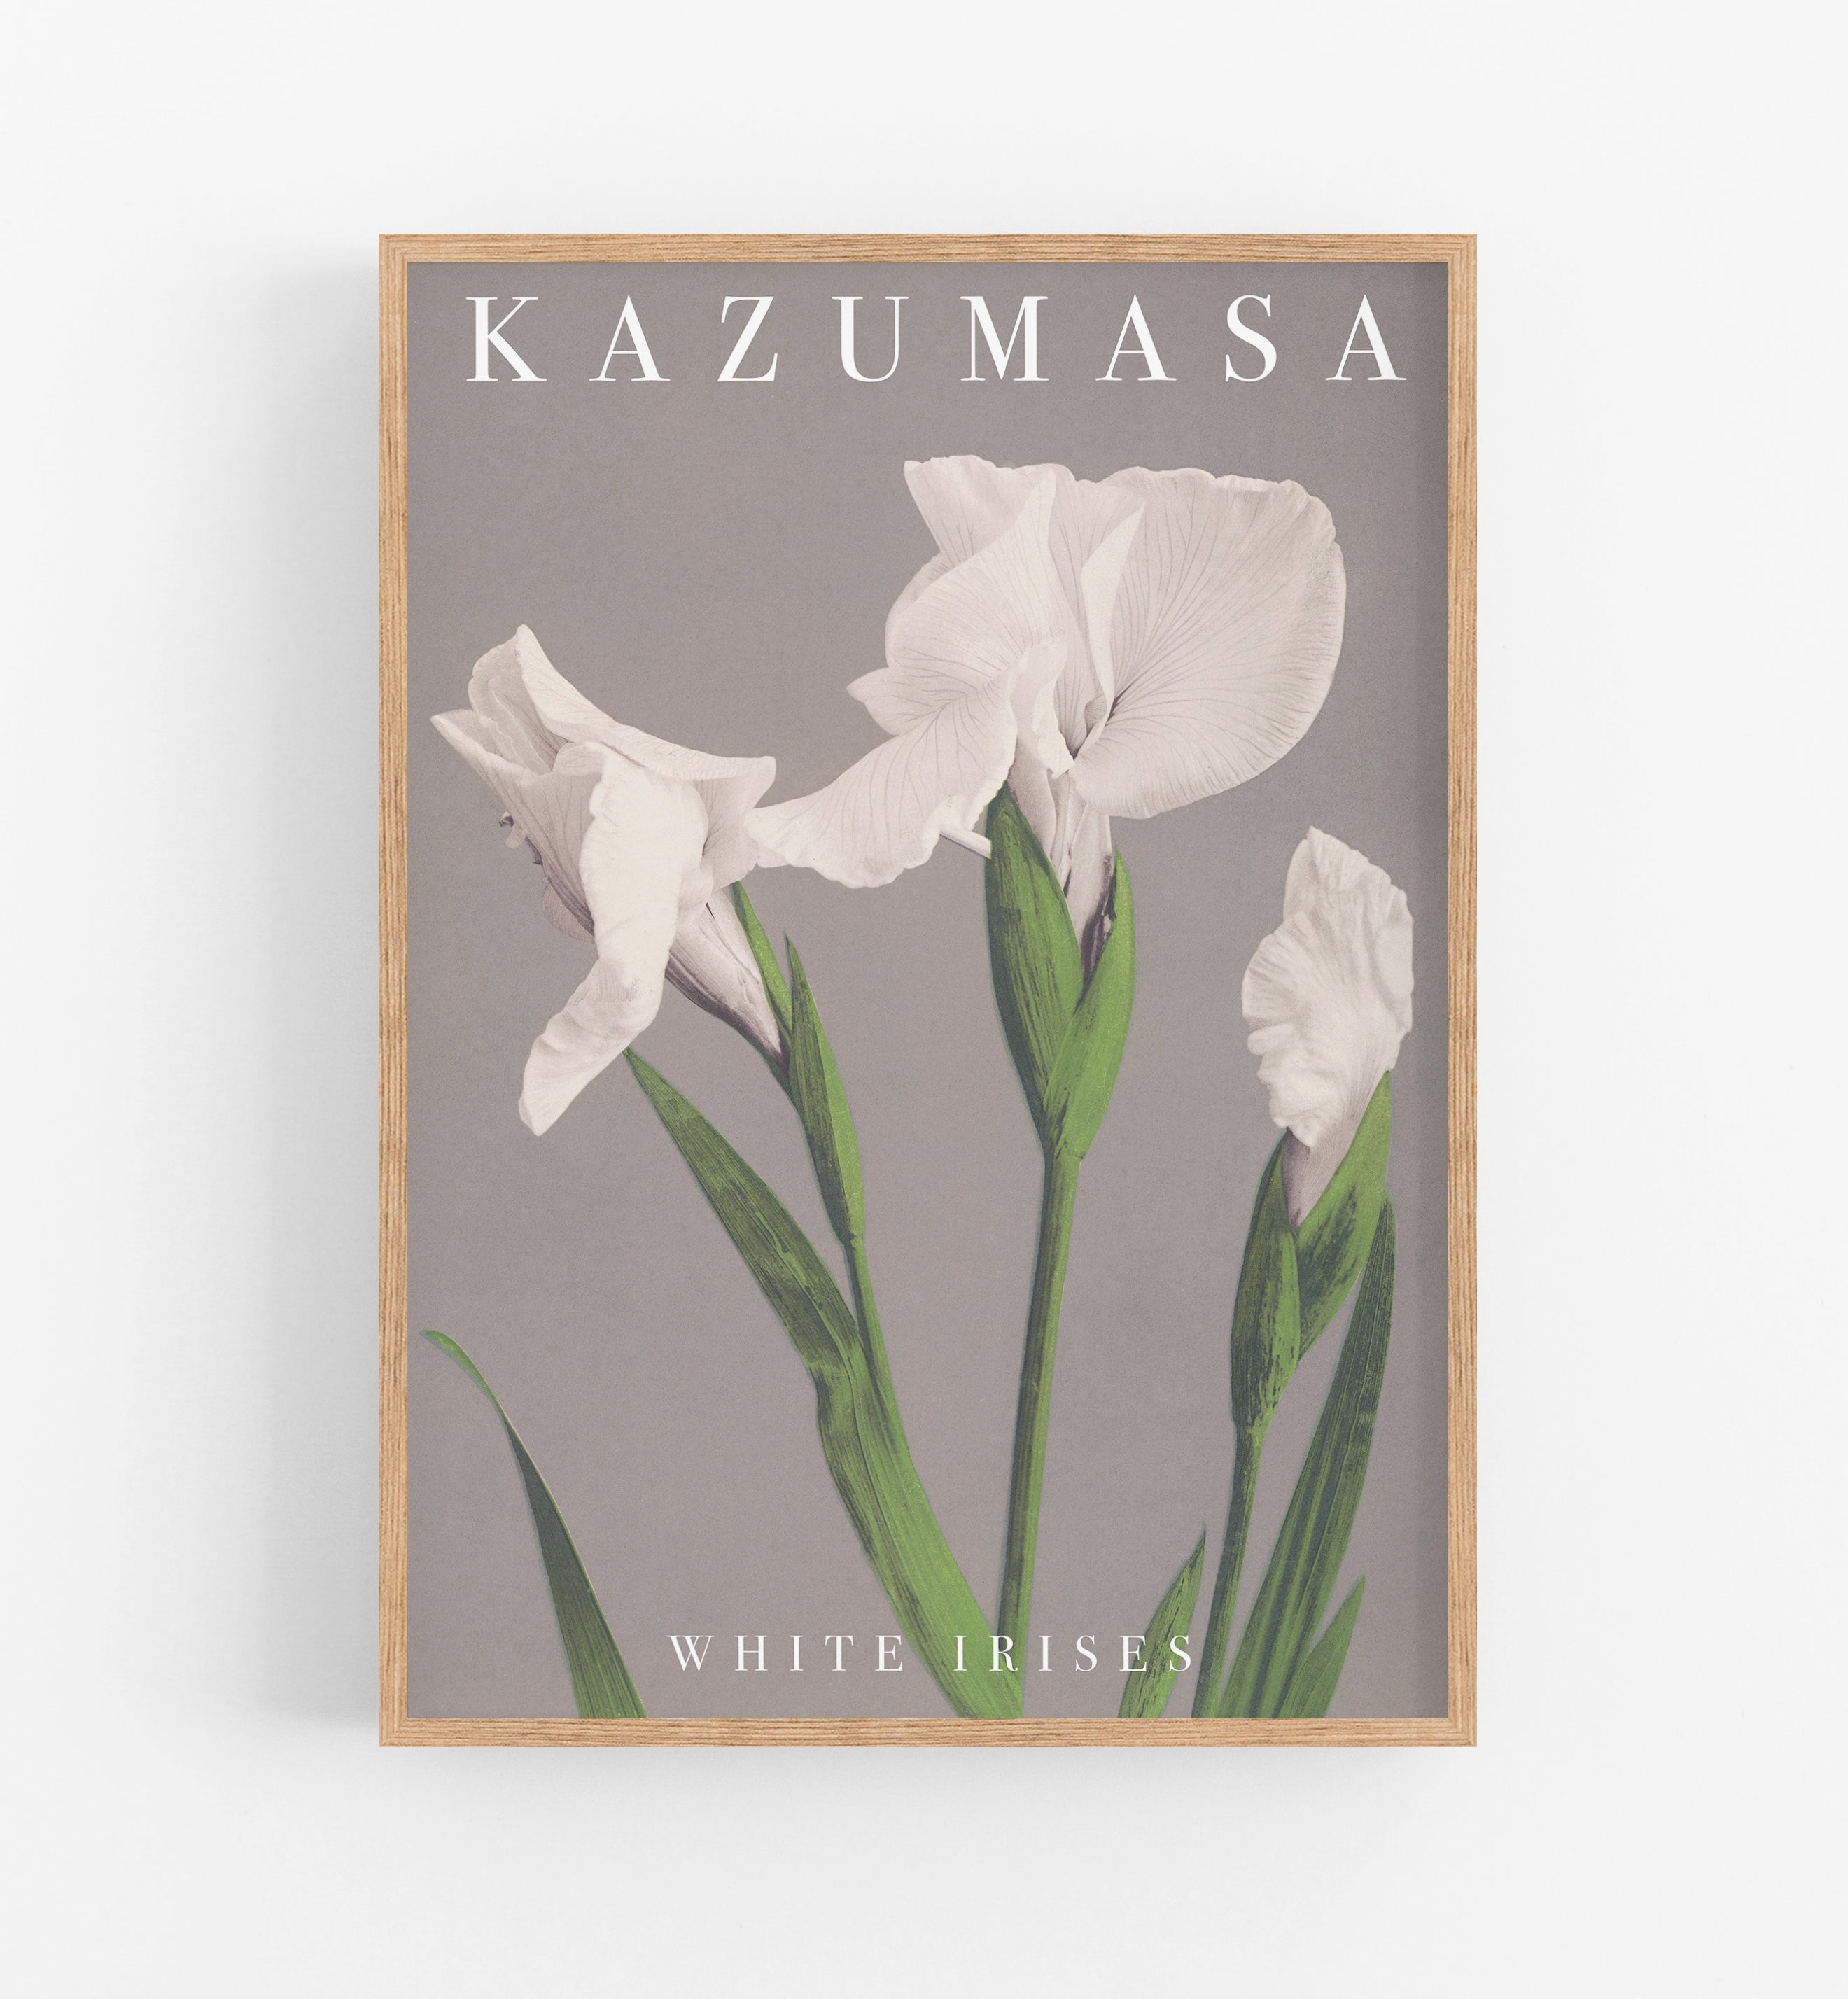 Kazumasa White Irises